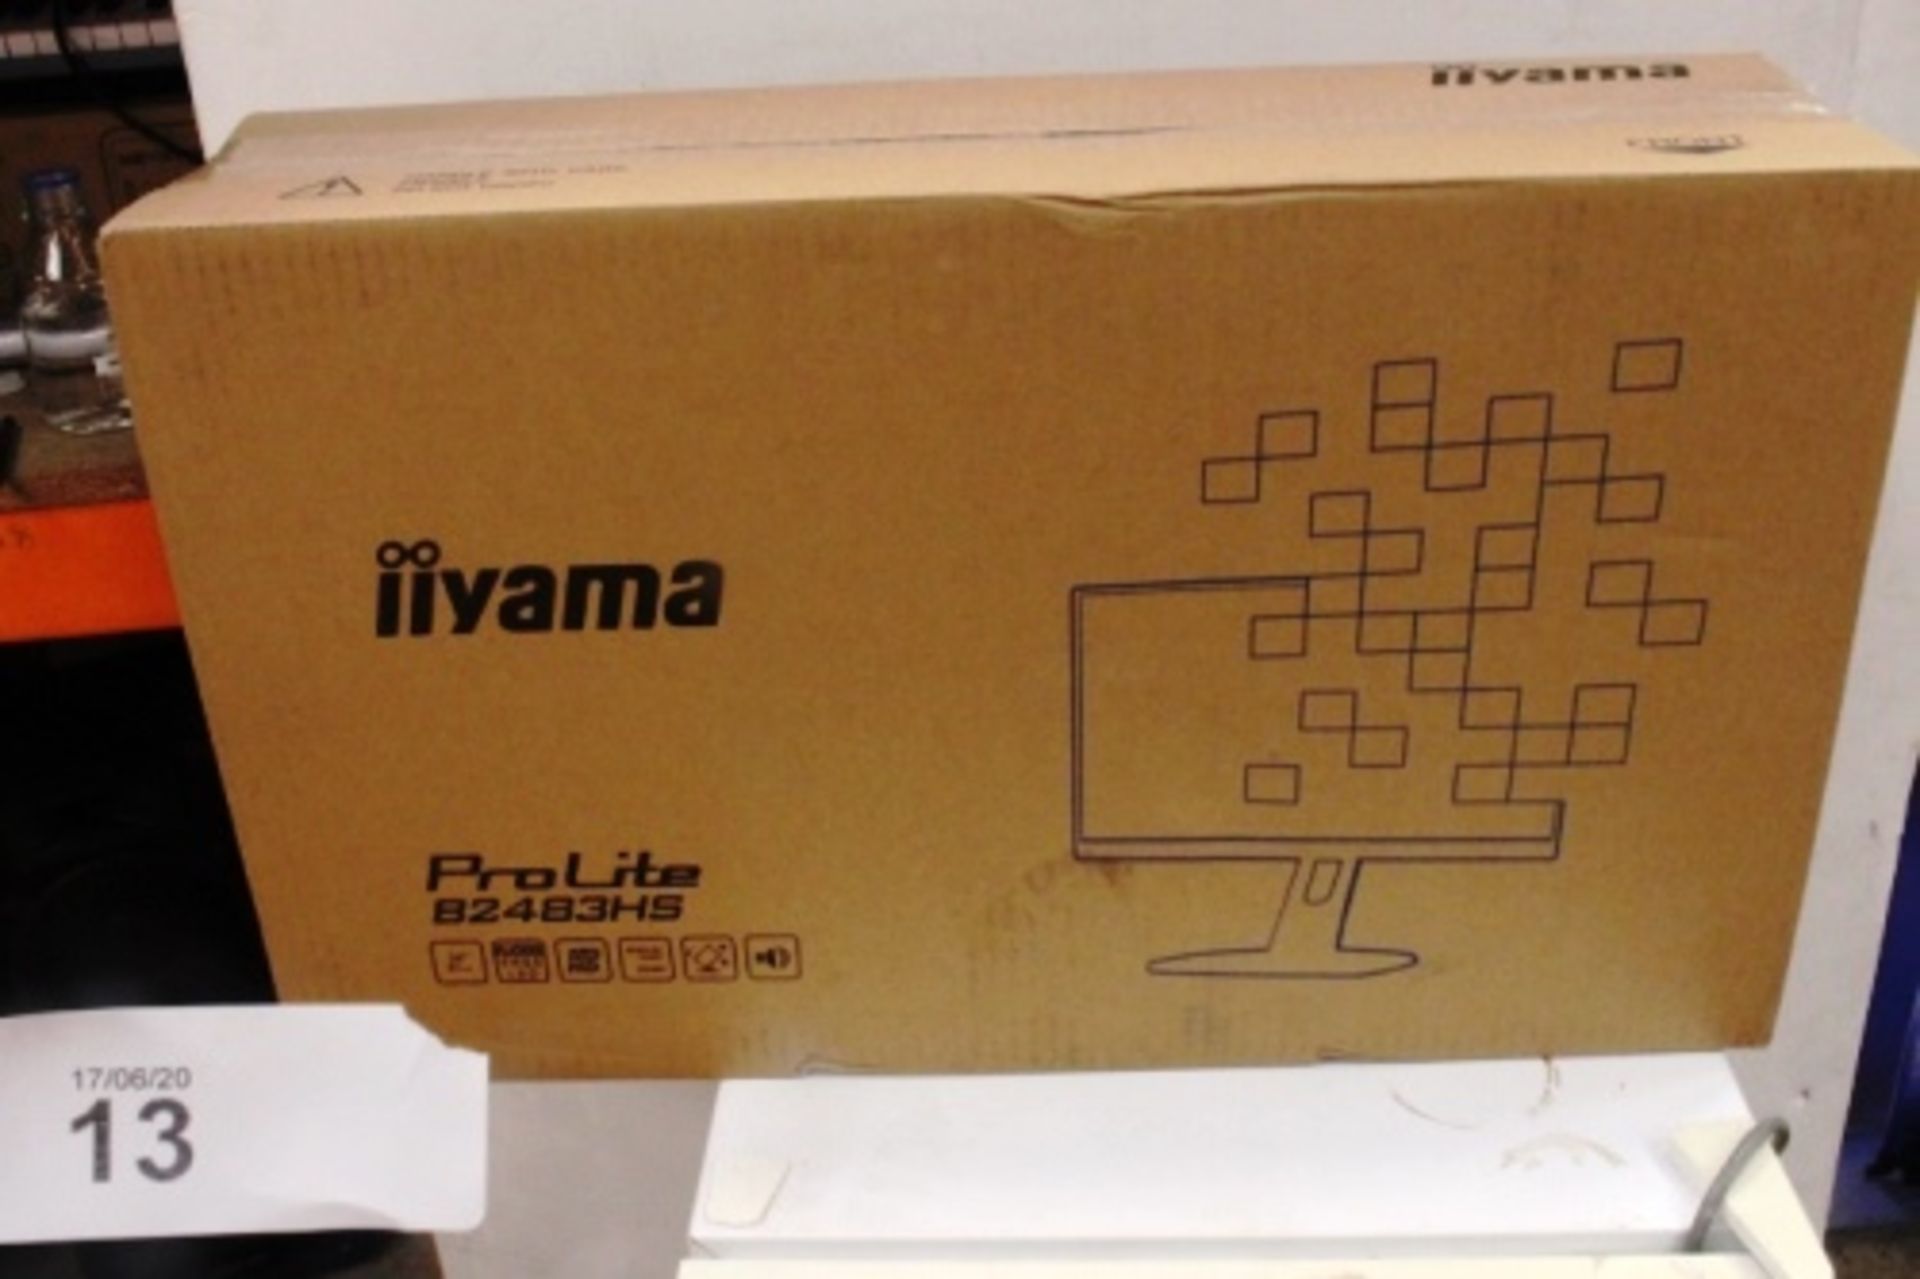 iiyama Prolite HDMI LCD monitor, part code B2483HS-B3, RRP £100.00 - Sealed new (ES18)